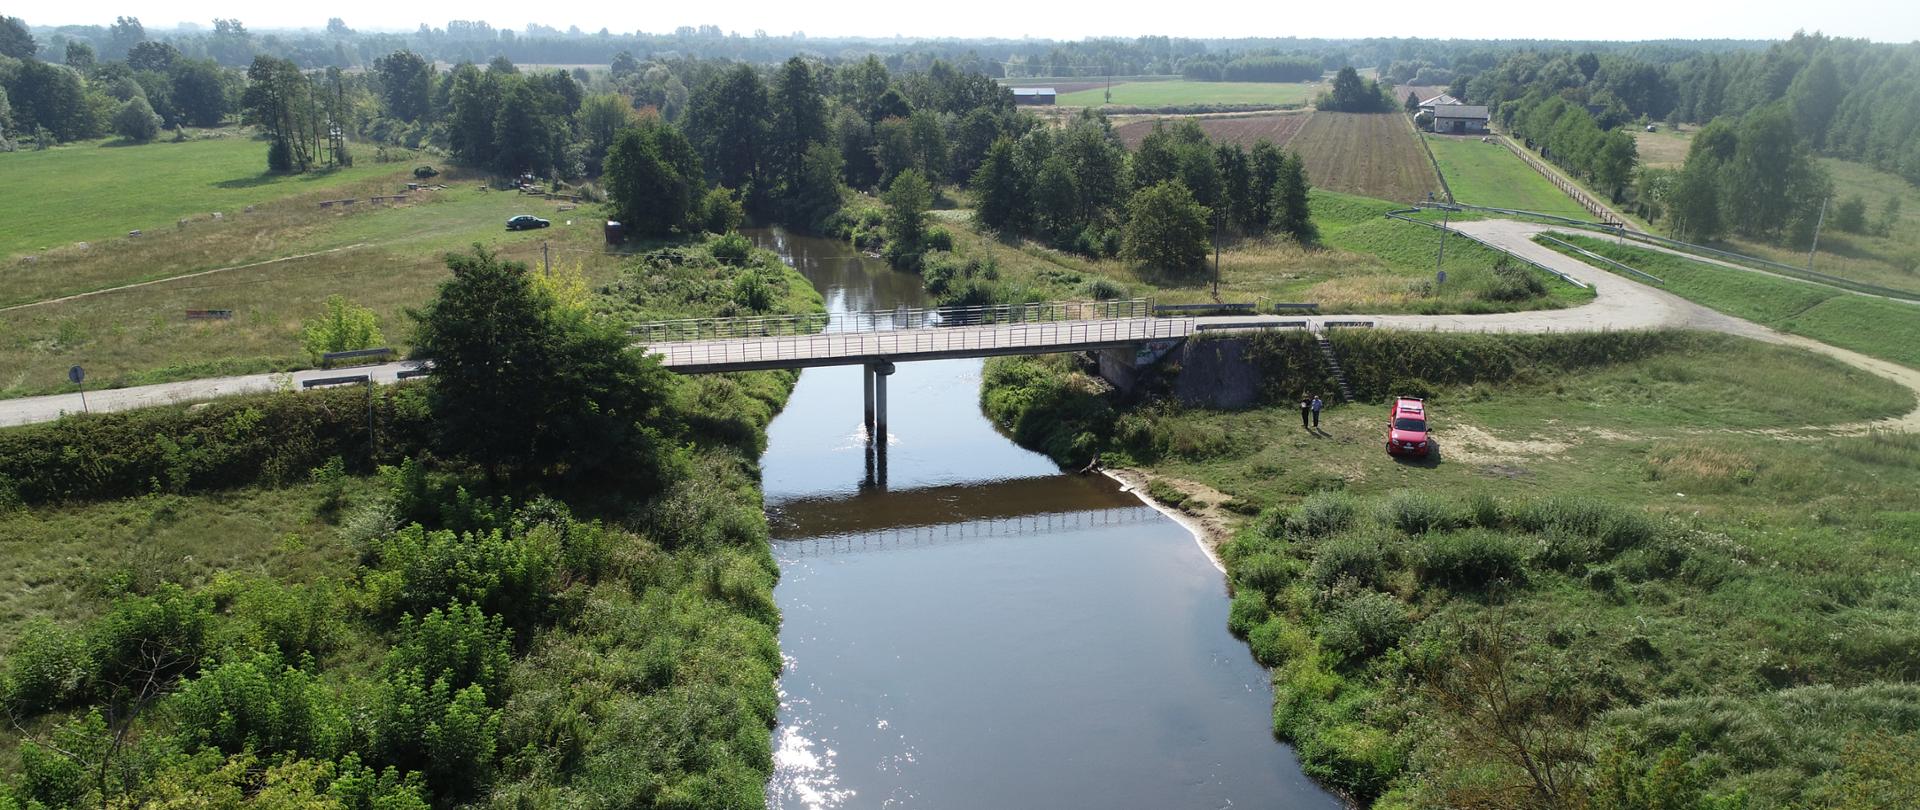 Zdjęcie wykonane z drona, widoczna rzeka, most obok którego stoi samochód specjalny strażacki. W oddali widoczne drzewa wzdłuż rzeki. 